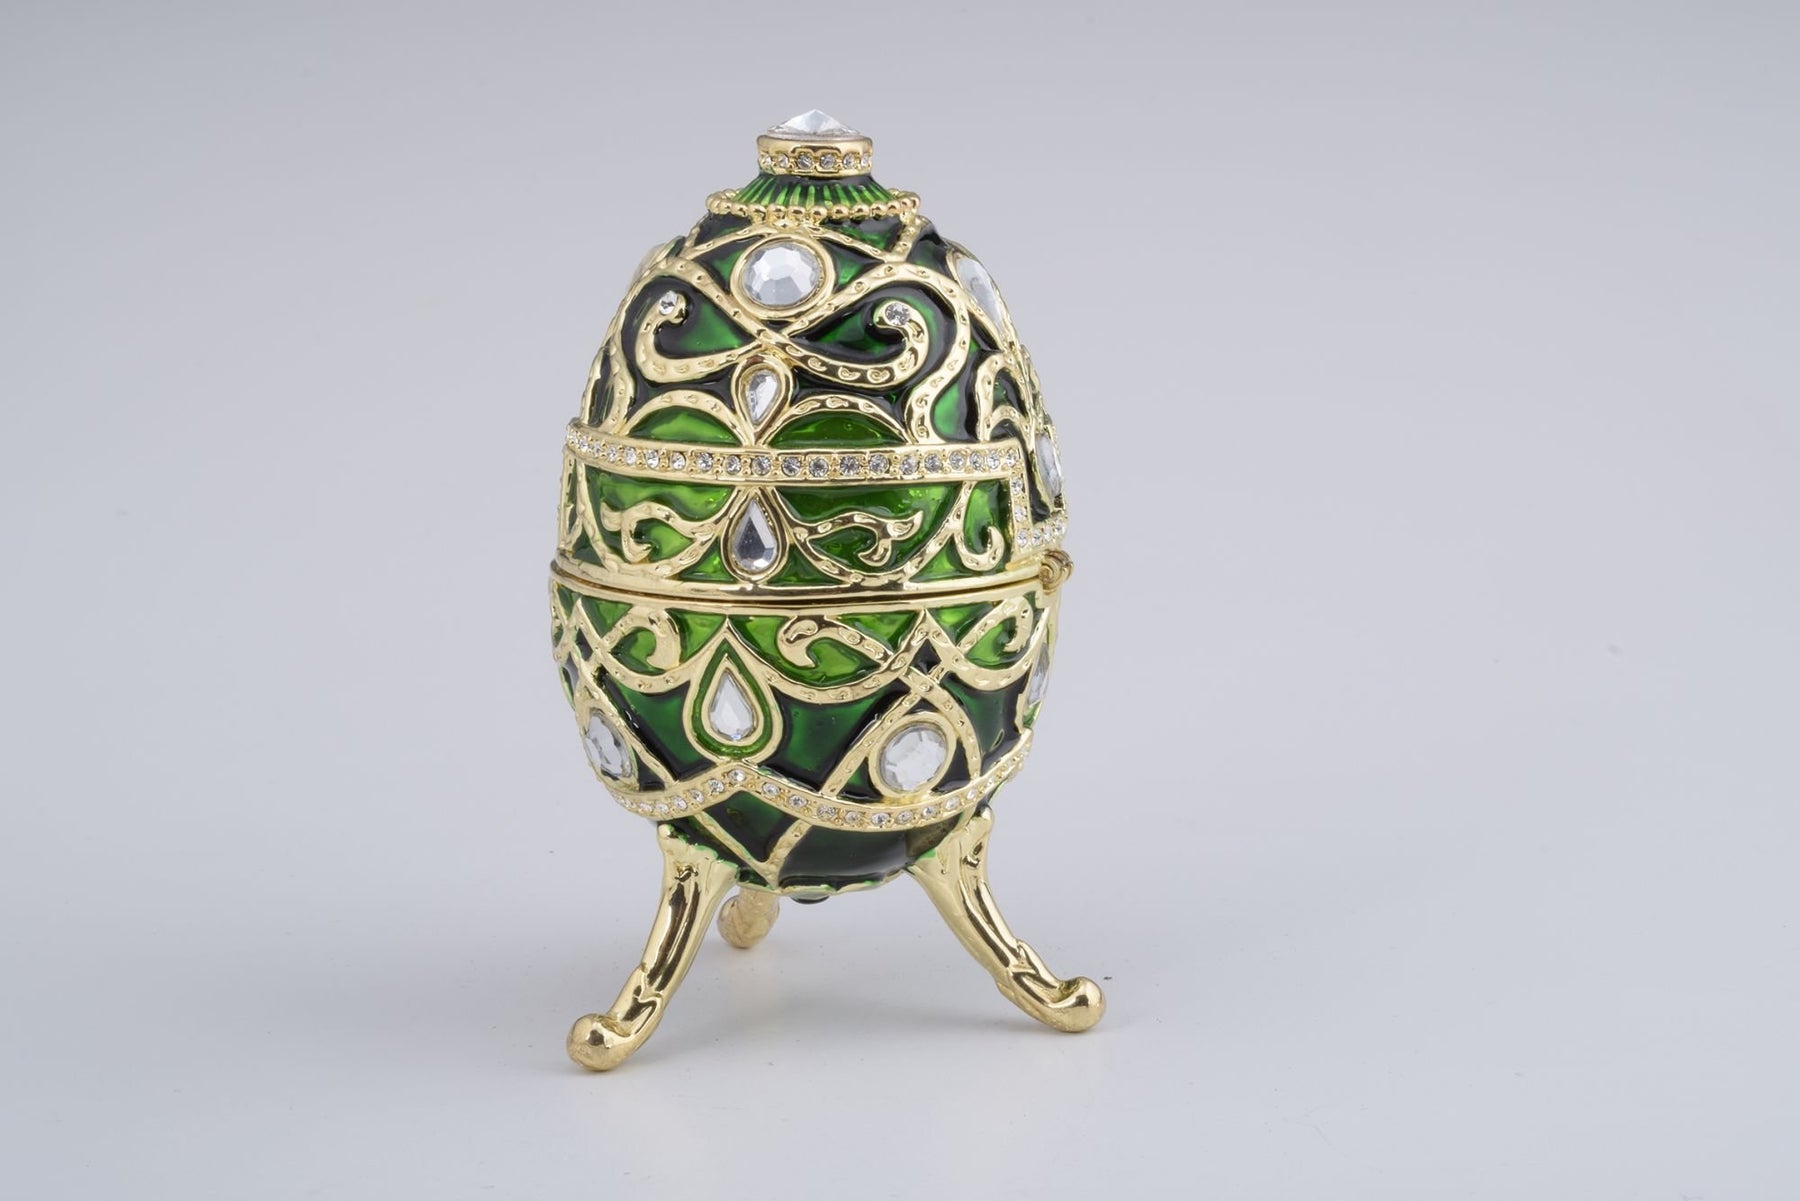 Keren Kopal Green Faberge Egg  94.50